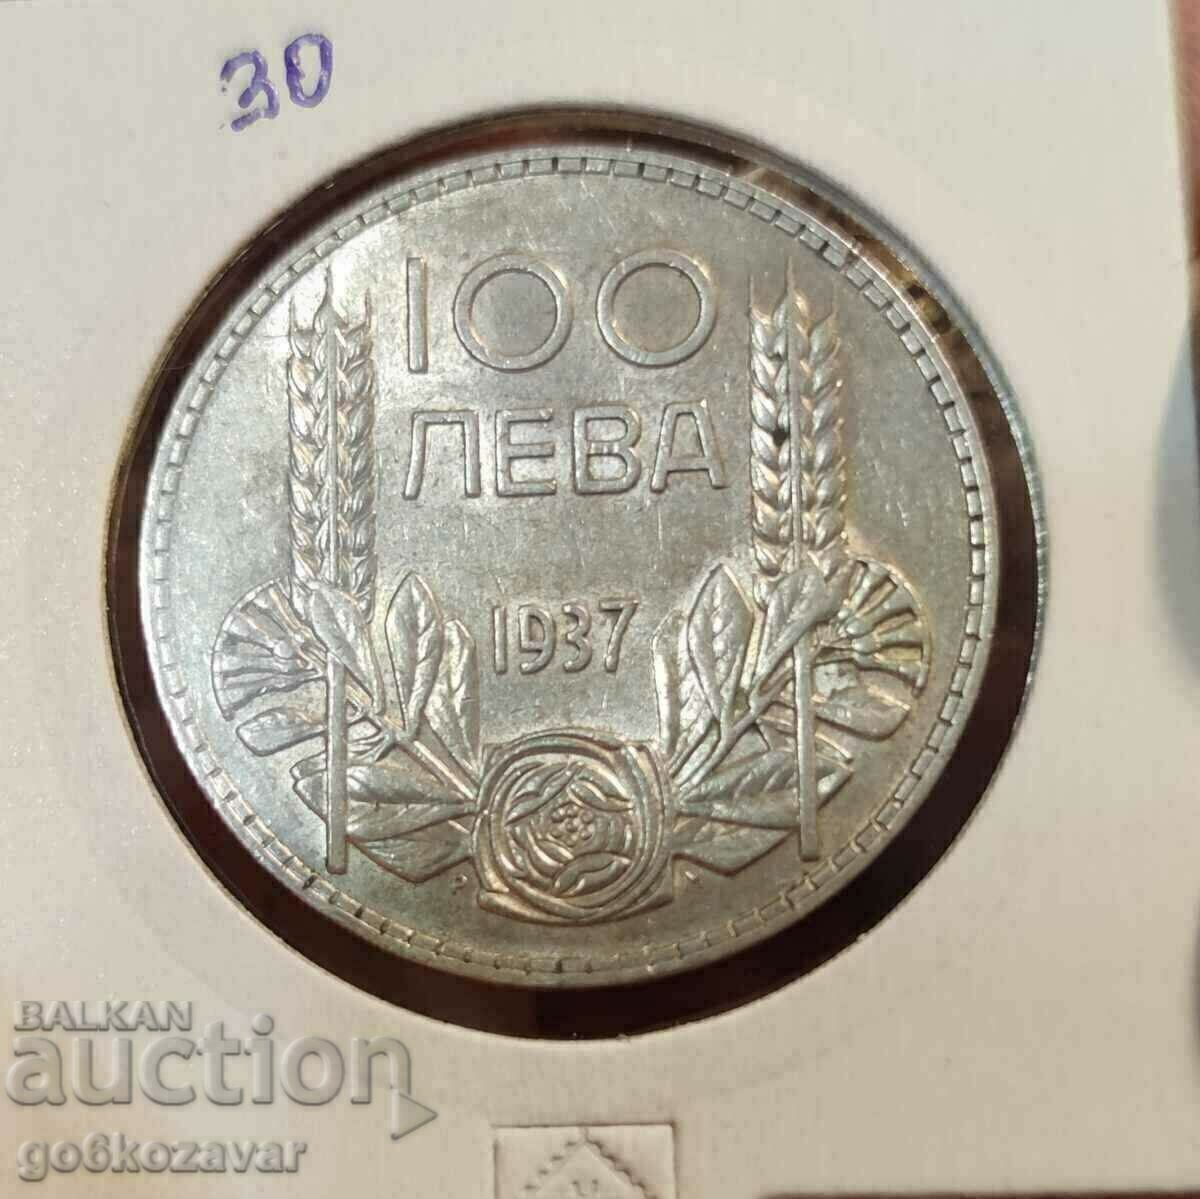 България 100лв 1937г Сребро.Хубава монета за колекция!